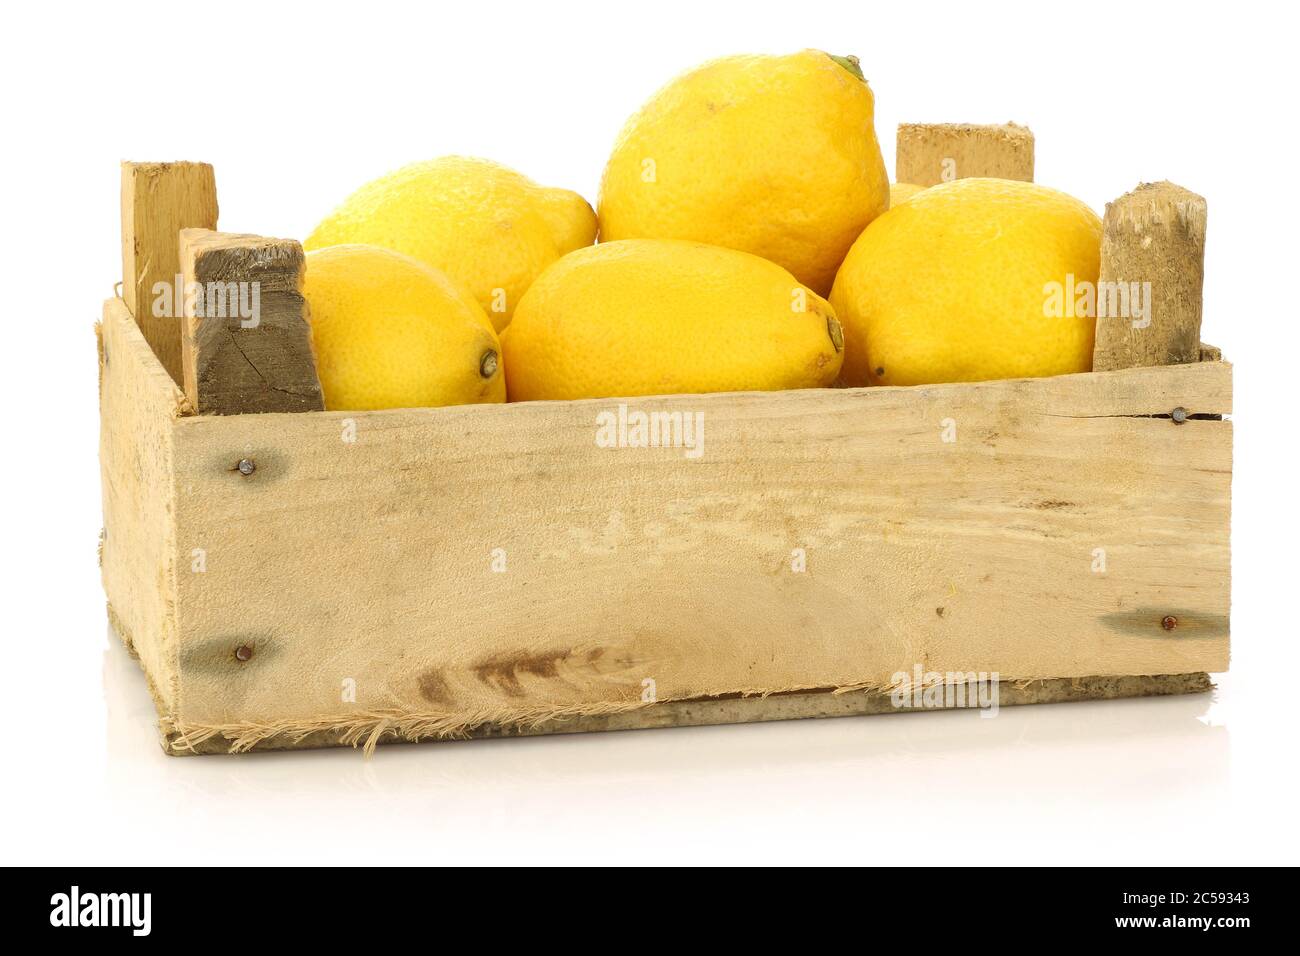 citrons frais dans une boîte en bois sur fond blanc Banque D'Images